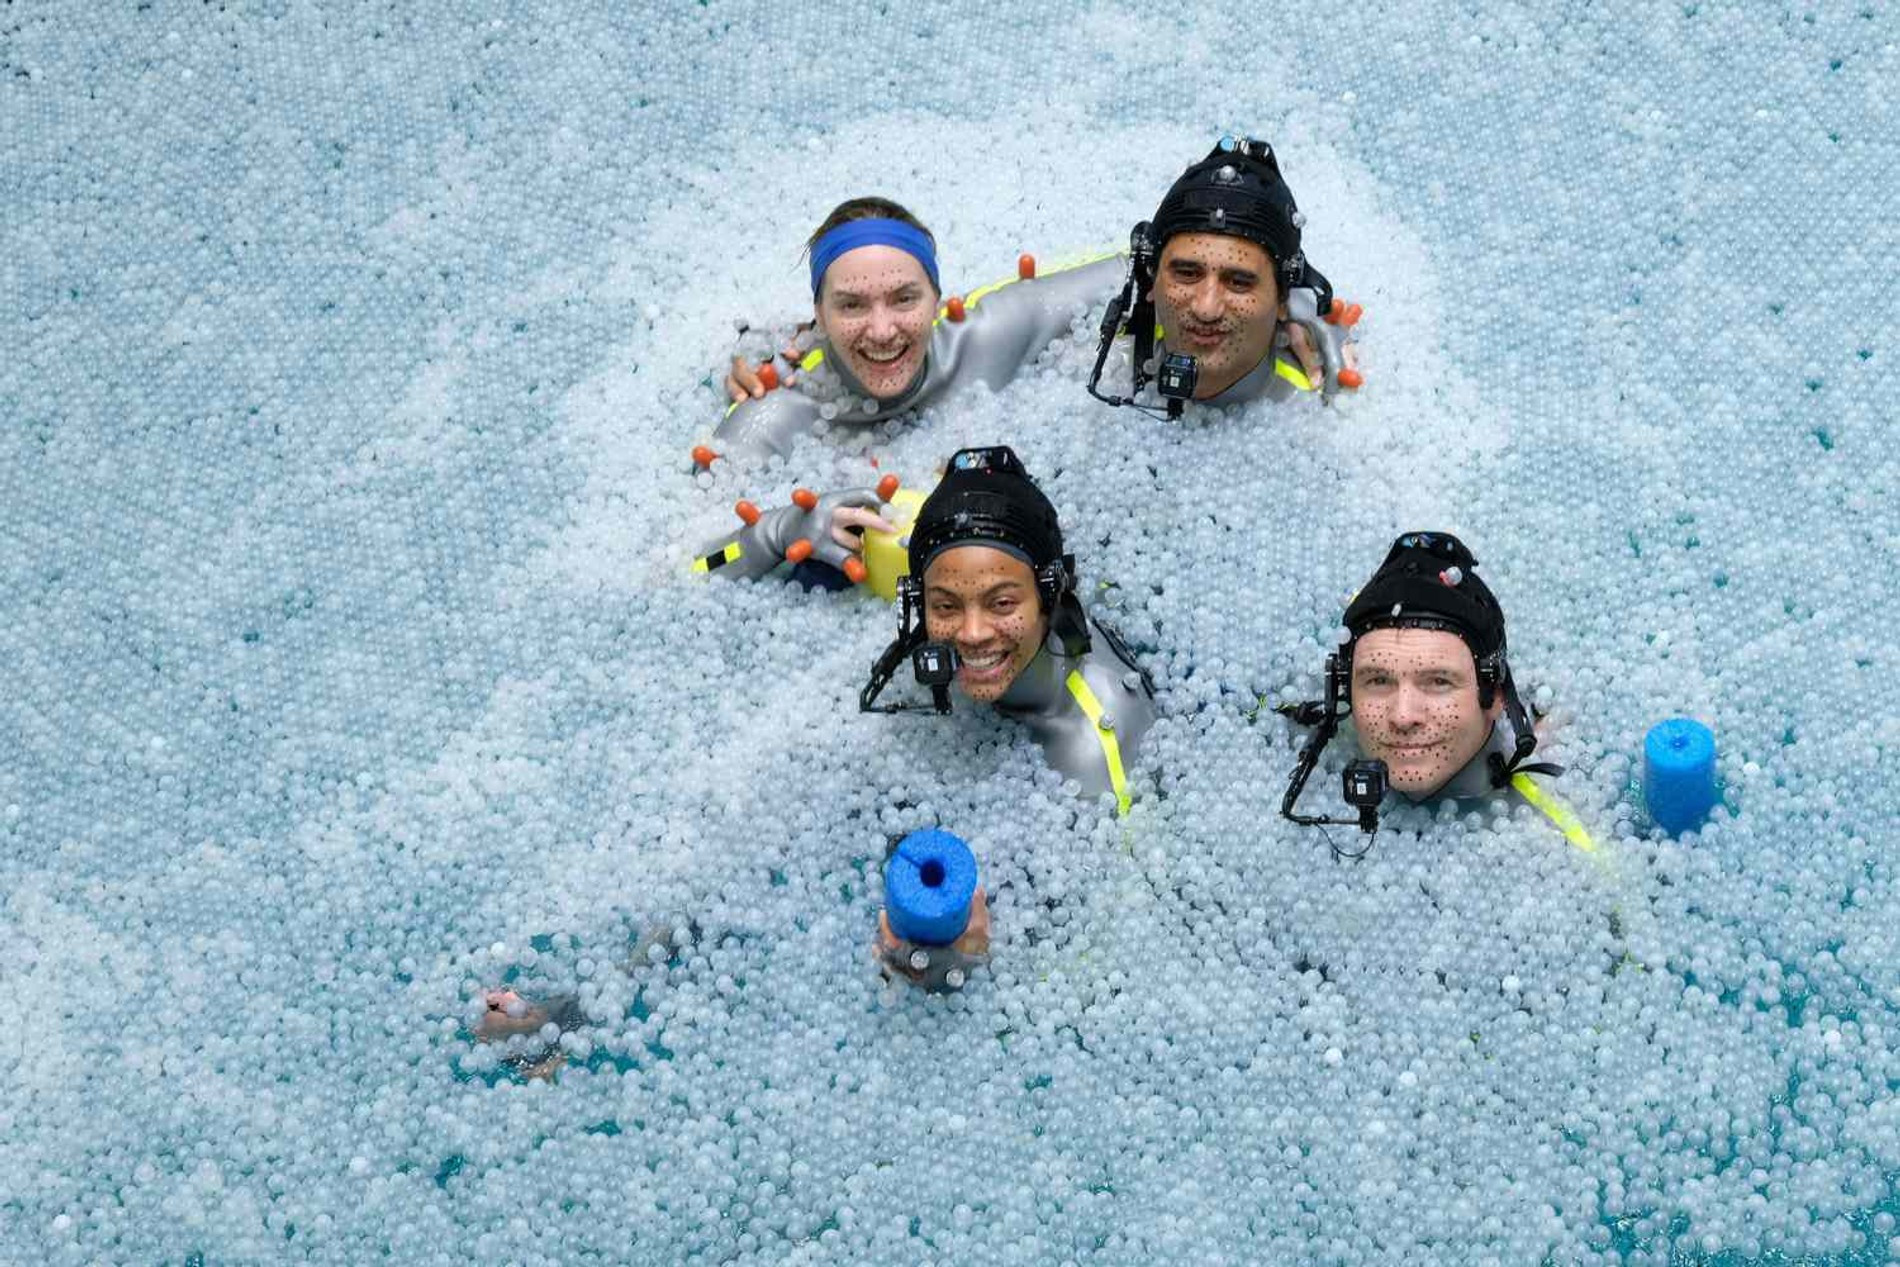 Кейт Уинслет, Зои Салдана, Клифф Кертис
и Сэм Вашингтон на съемках фильма «Аватар: Путь воды»
Фото: Disney